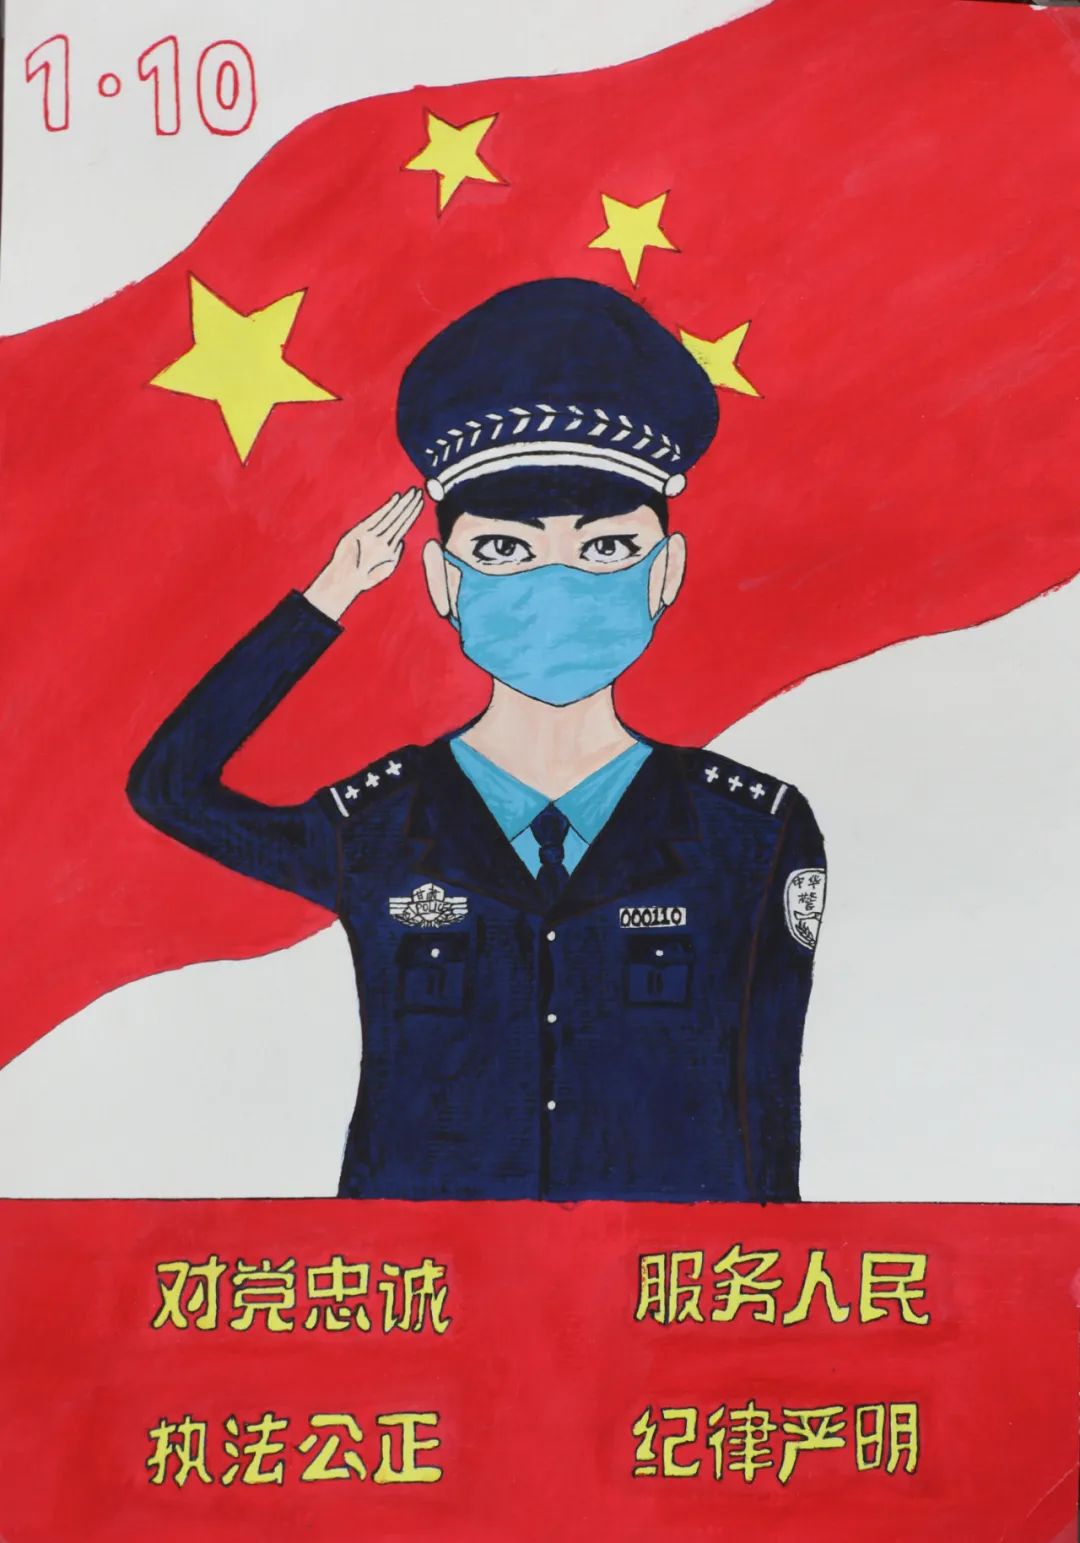 摄影绘画,有的通过书法篆刻等多种方式来喜迎首个"中国人民警察节",用